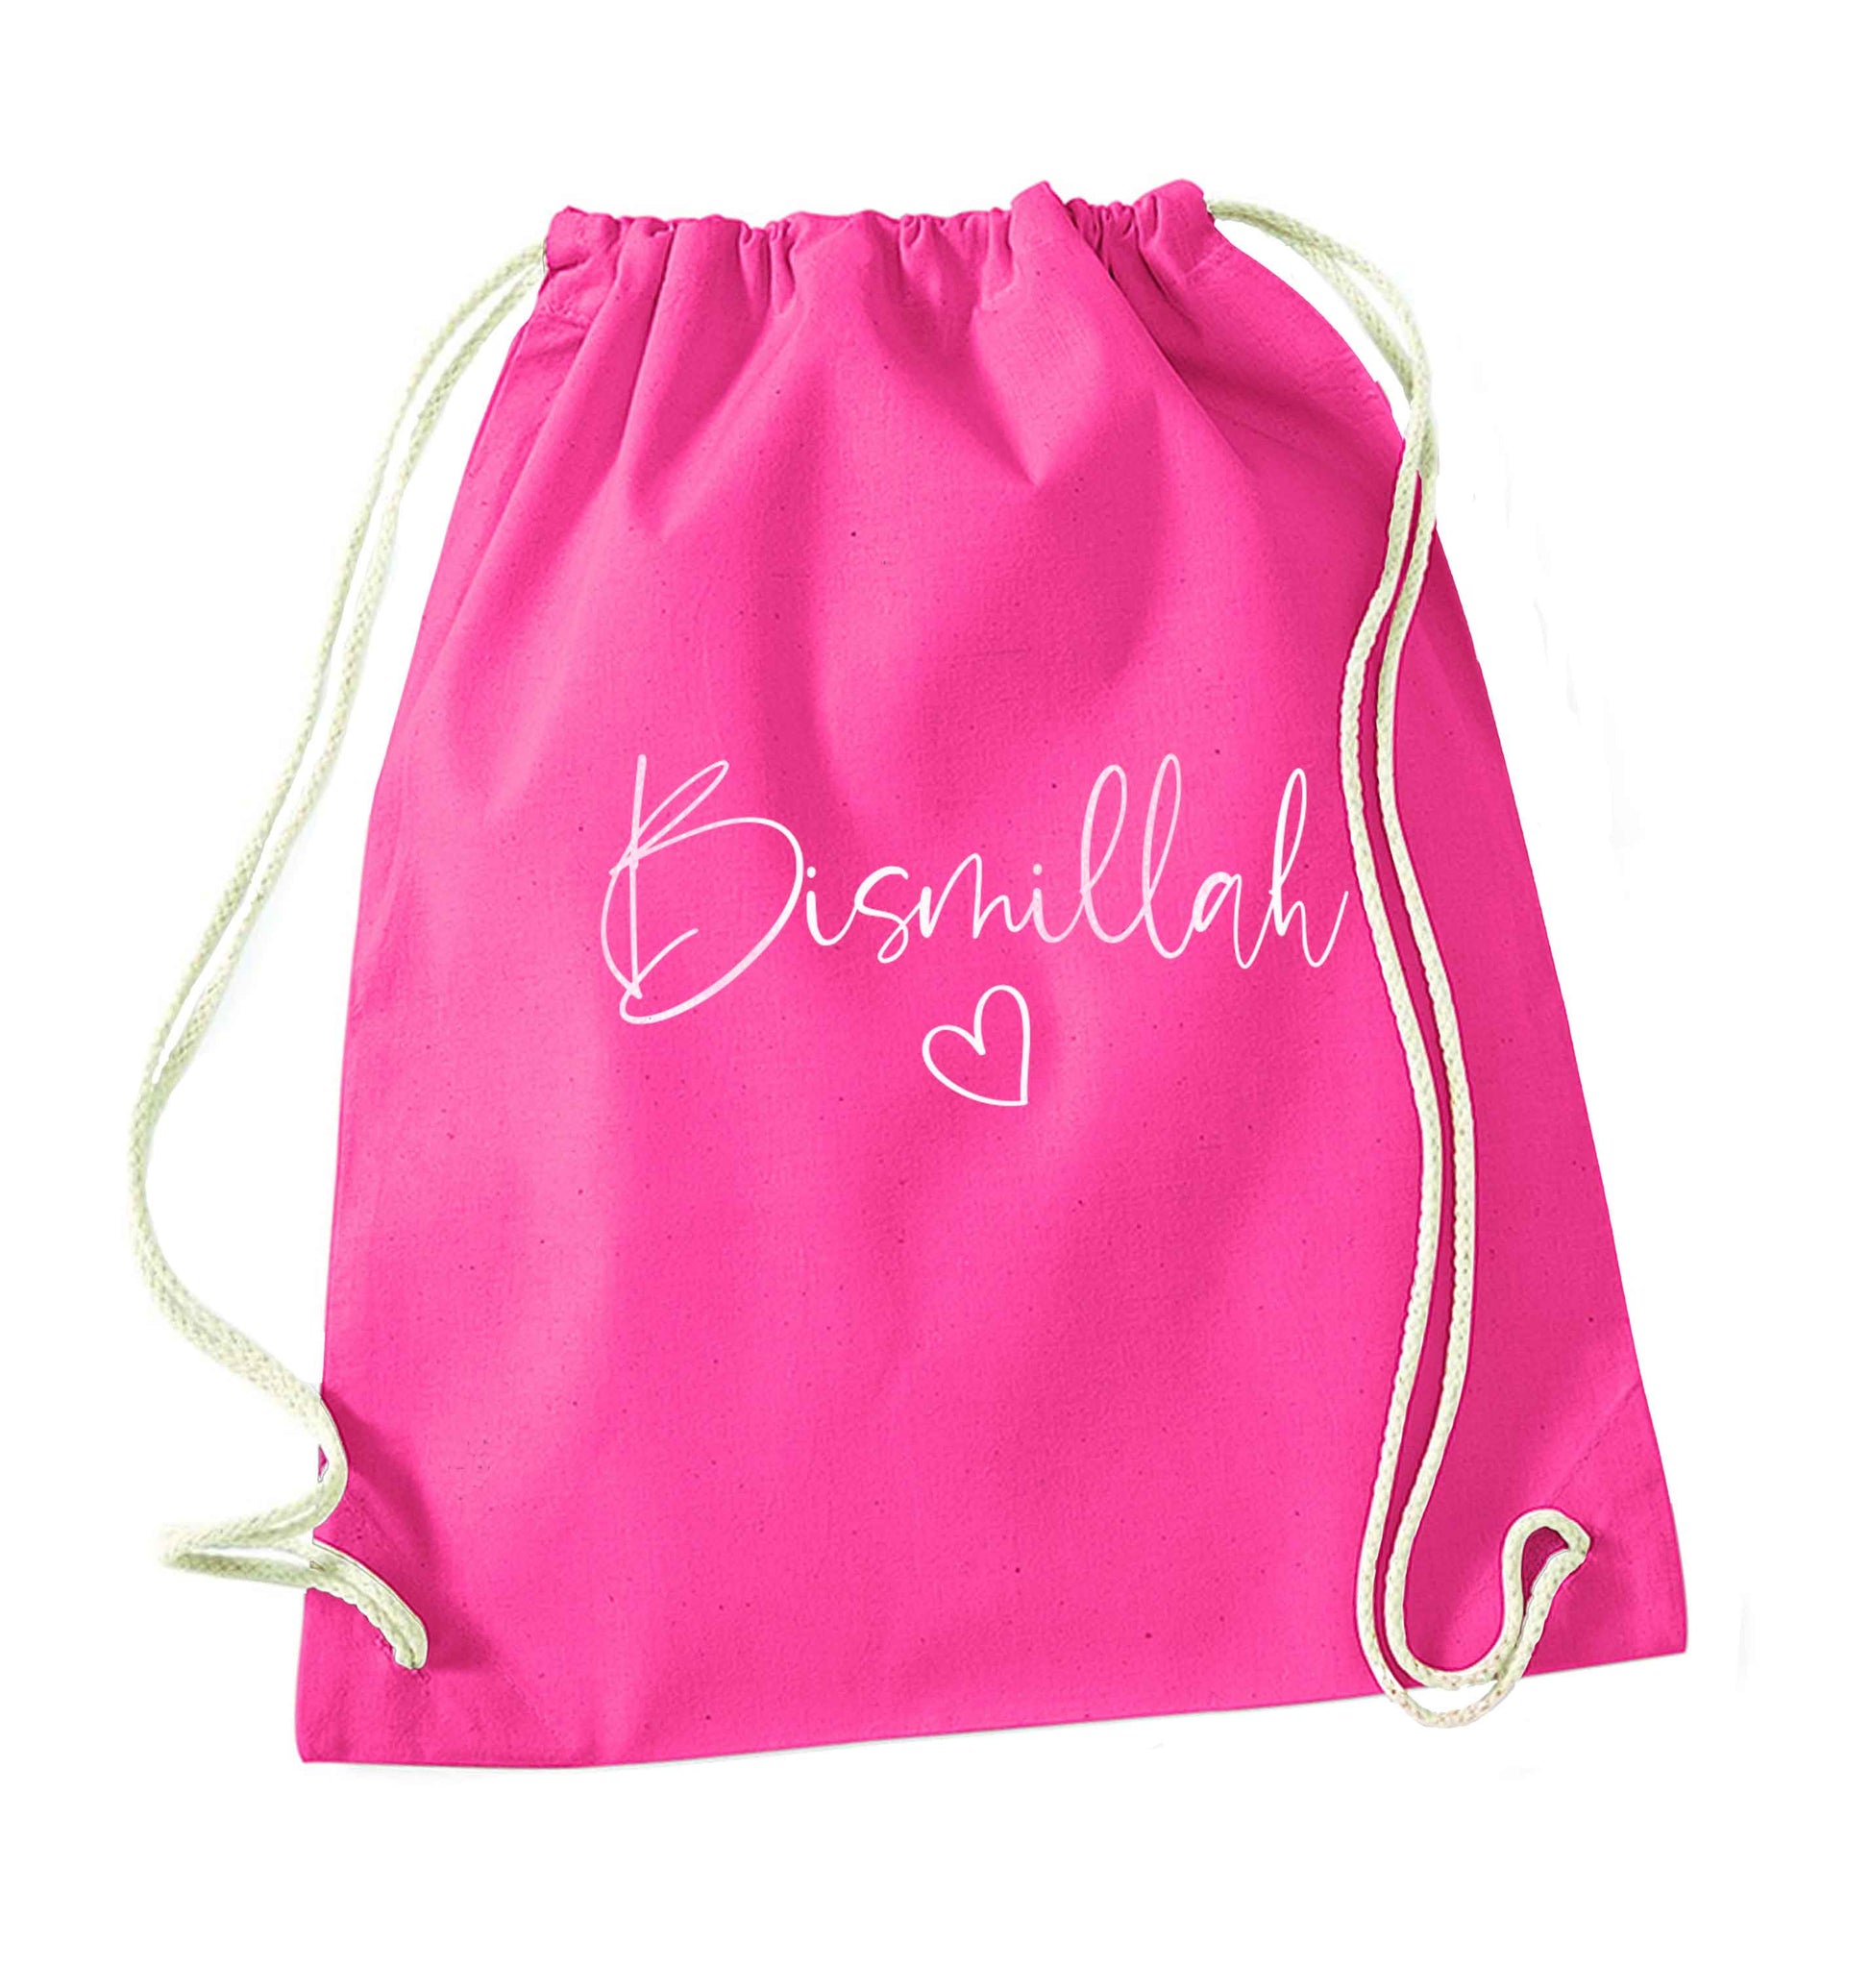 Bismillah pink drawstring bag